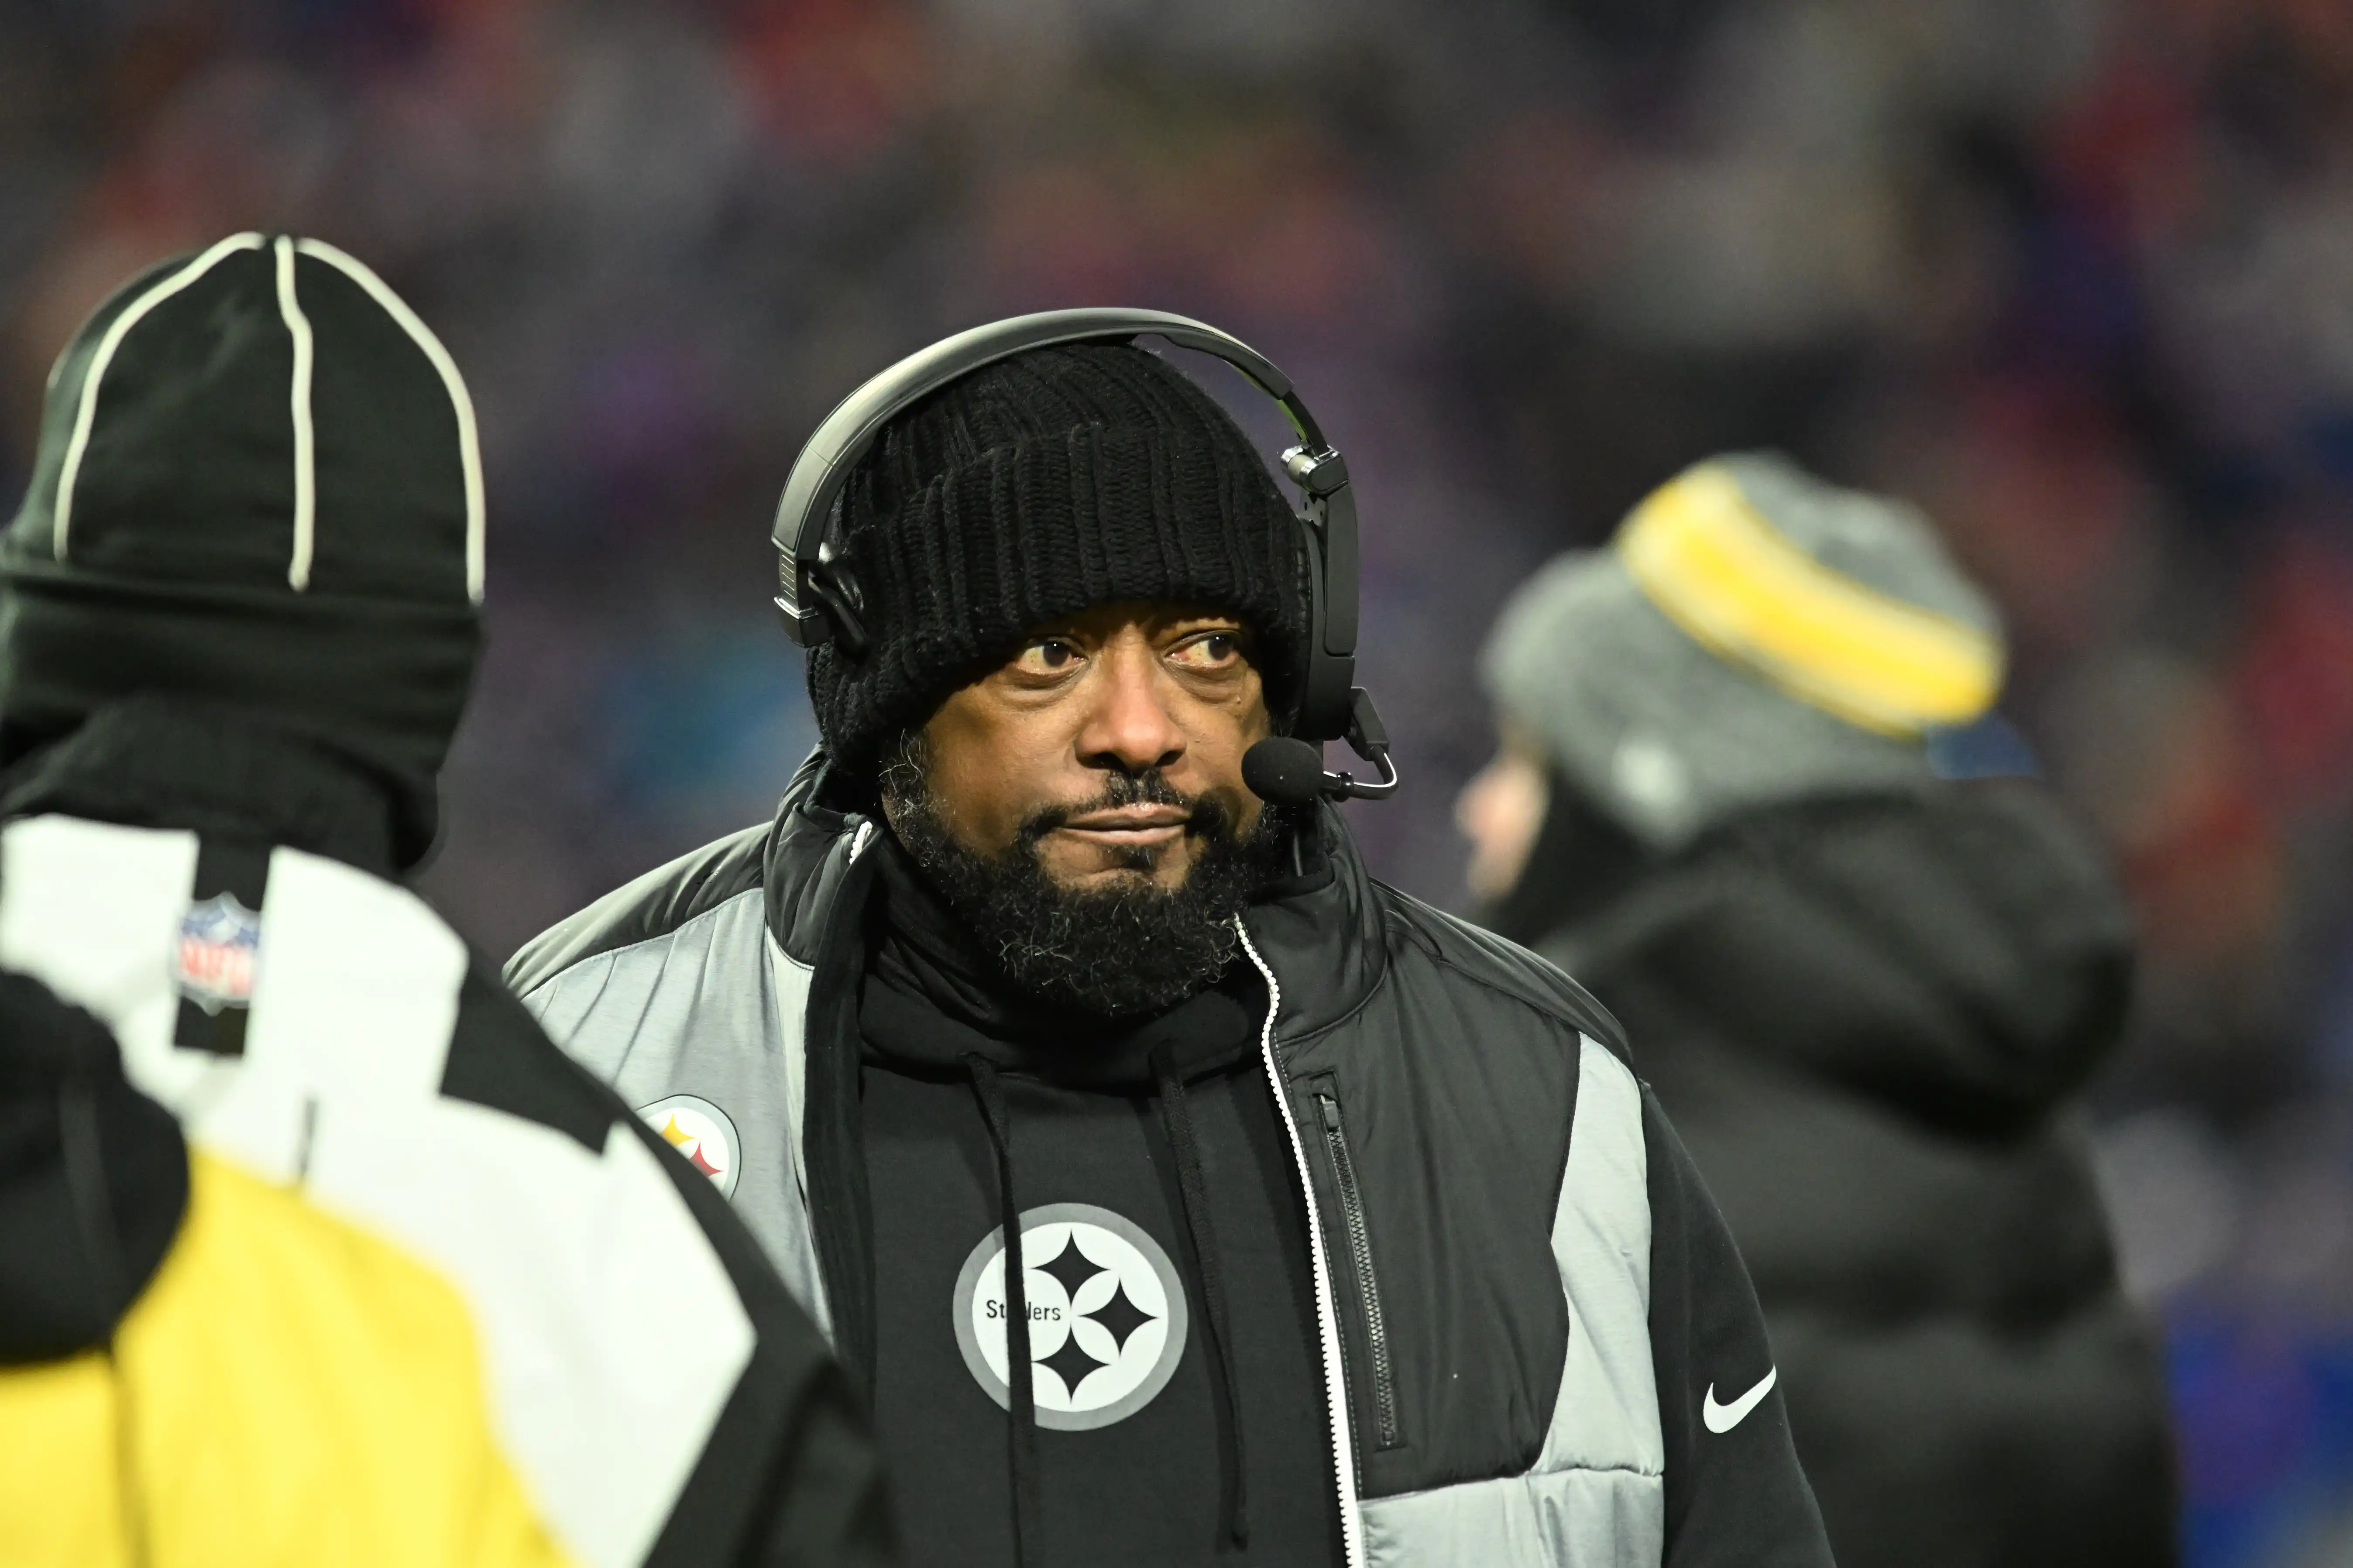 El entrenador en jefe de los Pittsburgh Steelers, Mike Tomlin, abandona abruptamente la conferencia de prensa posterior al juego en silencio